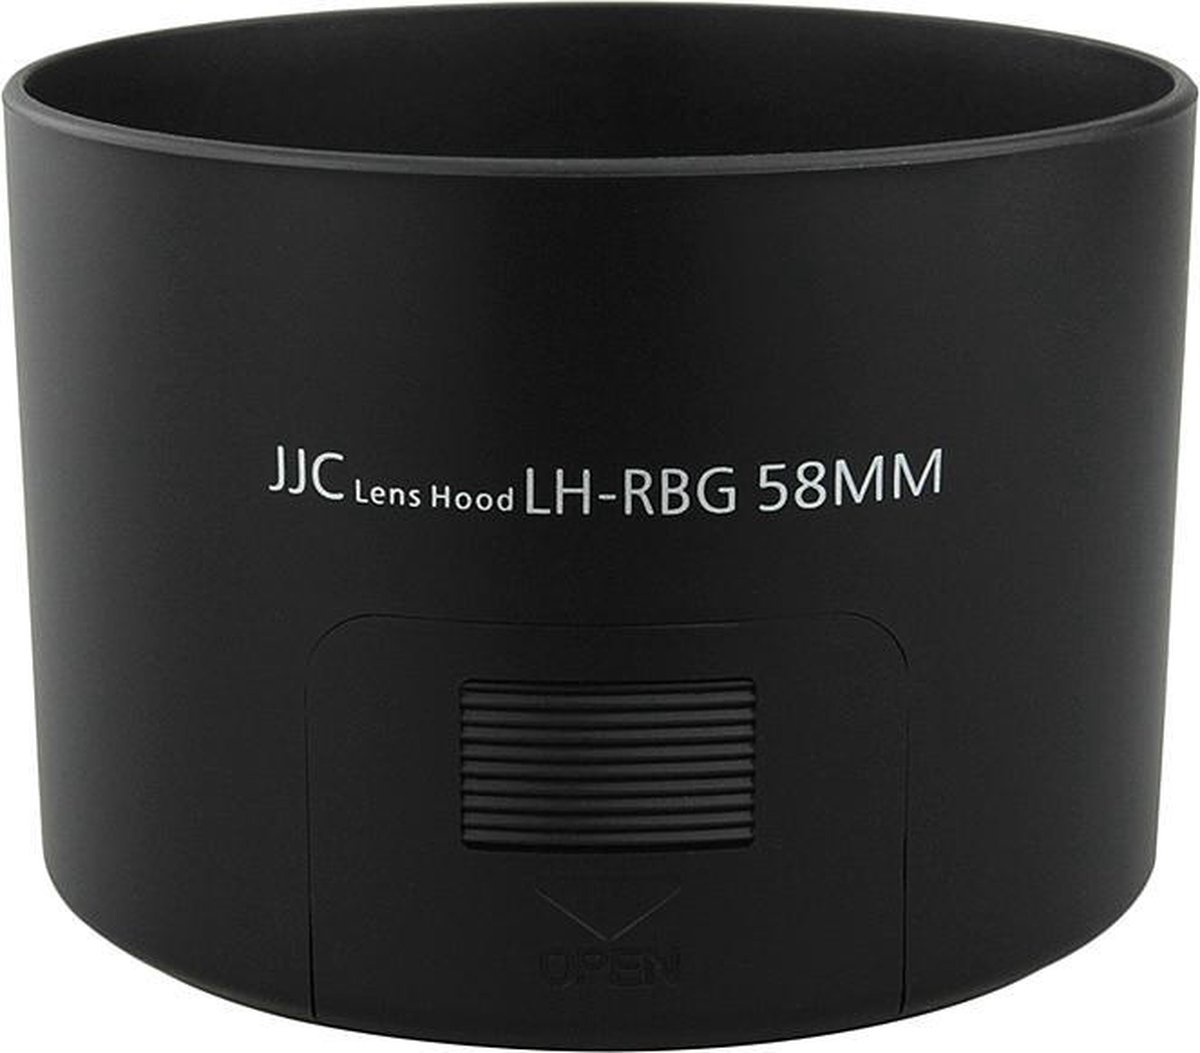 JJC LH-RBG camera lens adapter